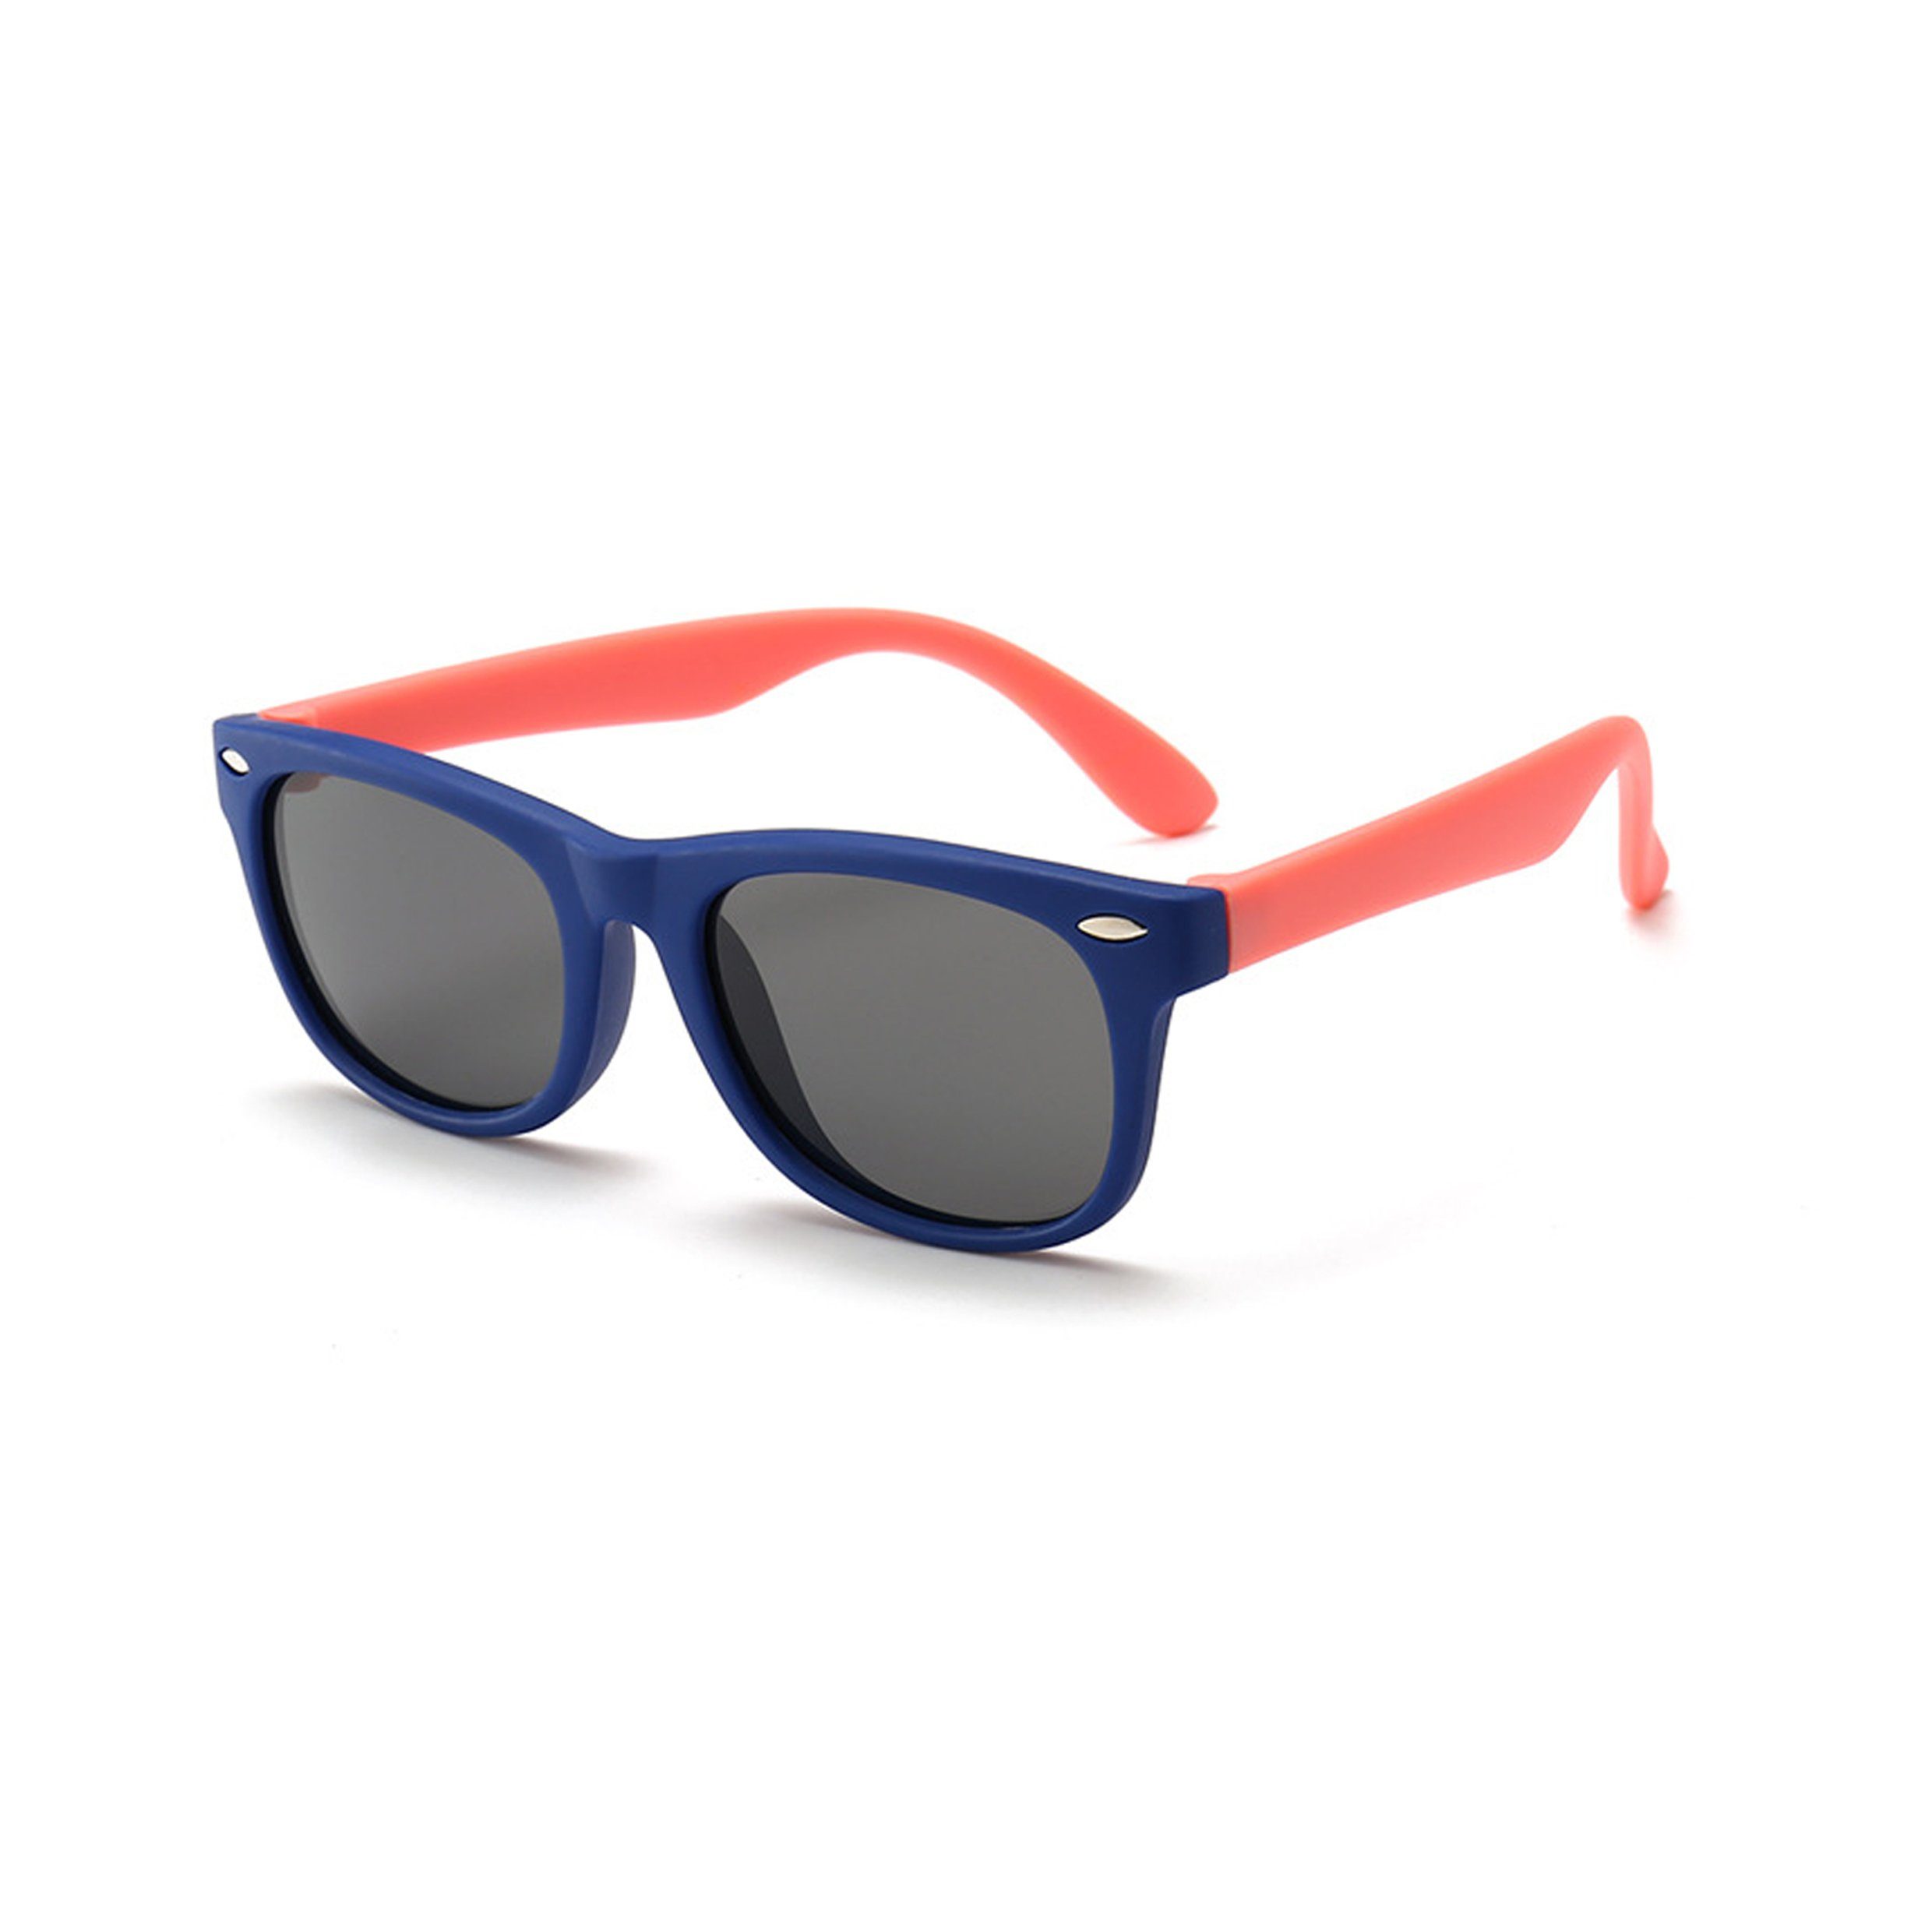 Olotos Sonnenbrille Sonnenbrille für Kinder Mädchen Jungen Gummi 100% UV400 Schutz Brille Dunkelblau-Orange